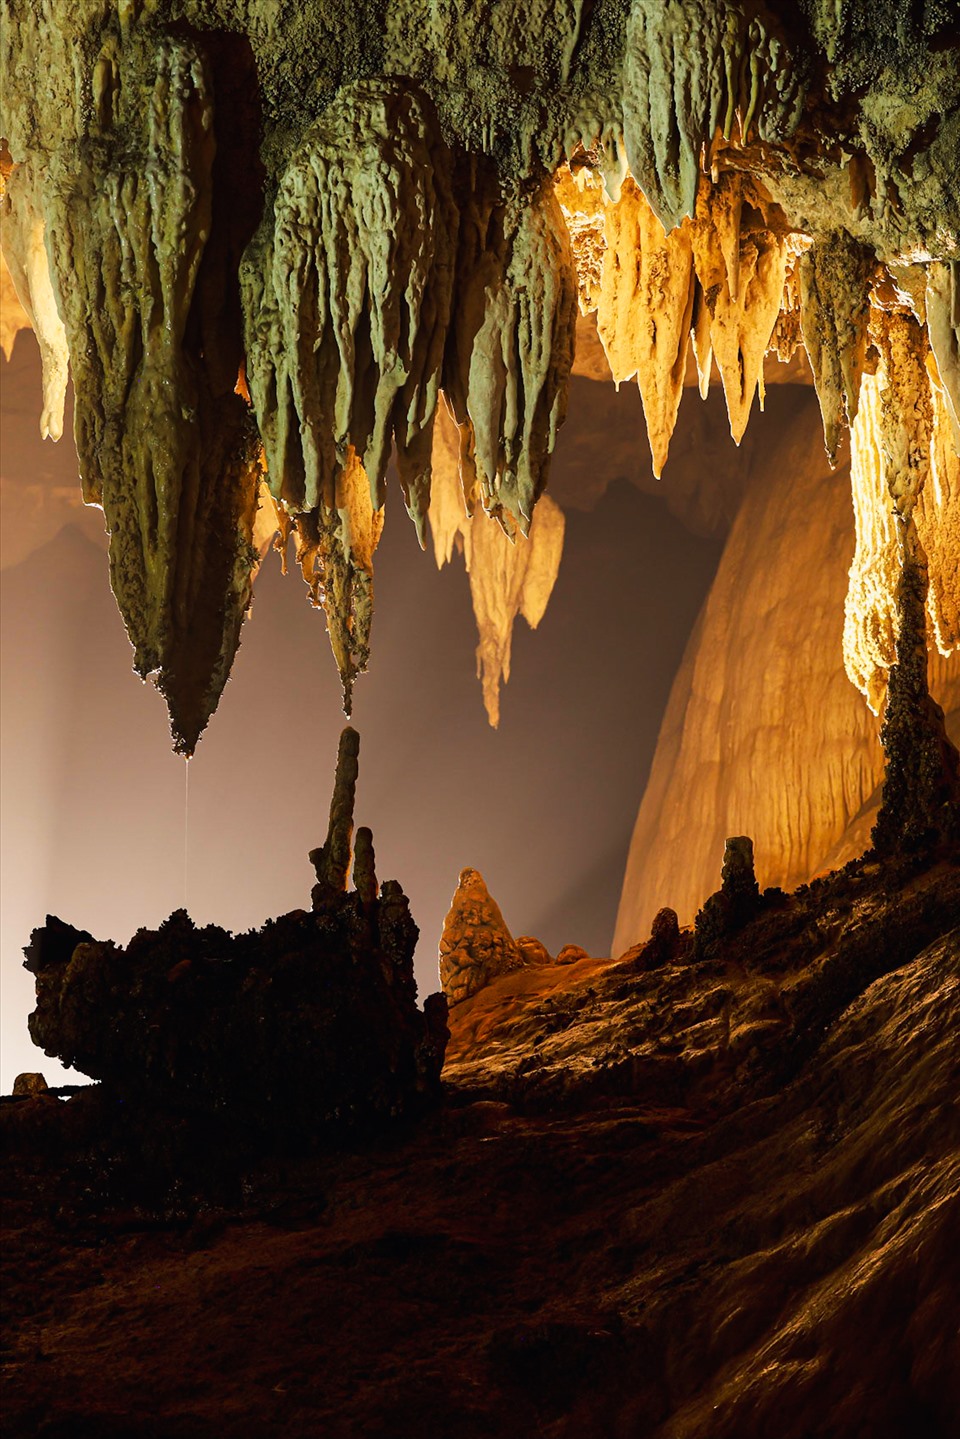 Khám phá thác nước trong hang động triệu năm dưới lòng đất ở Việt Nam